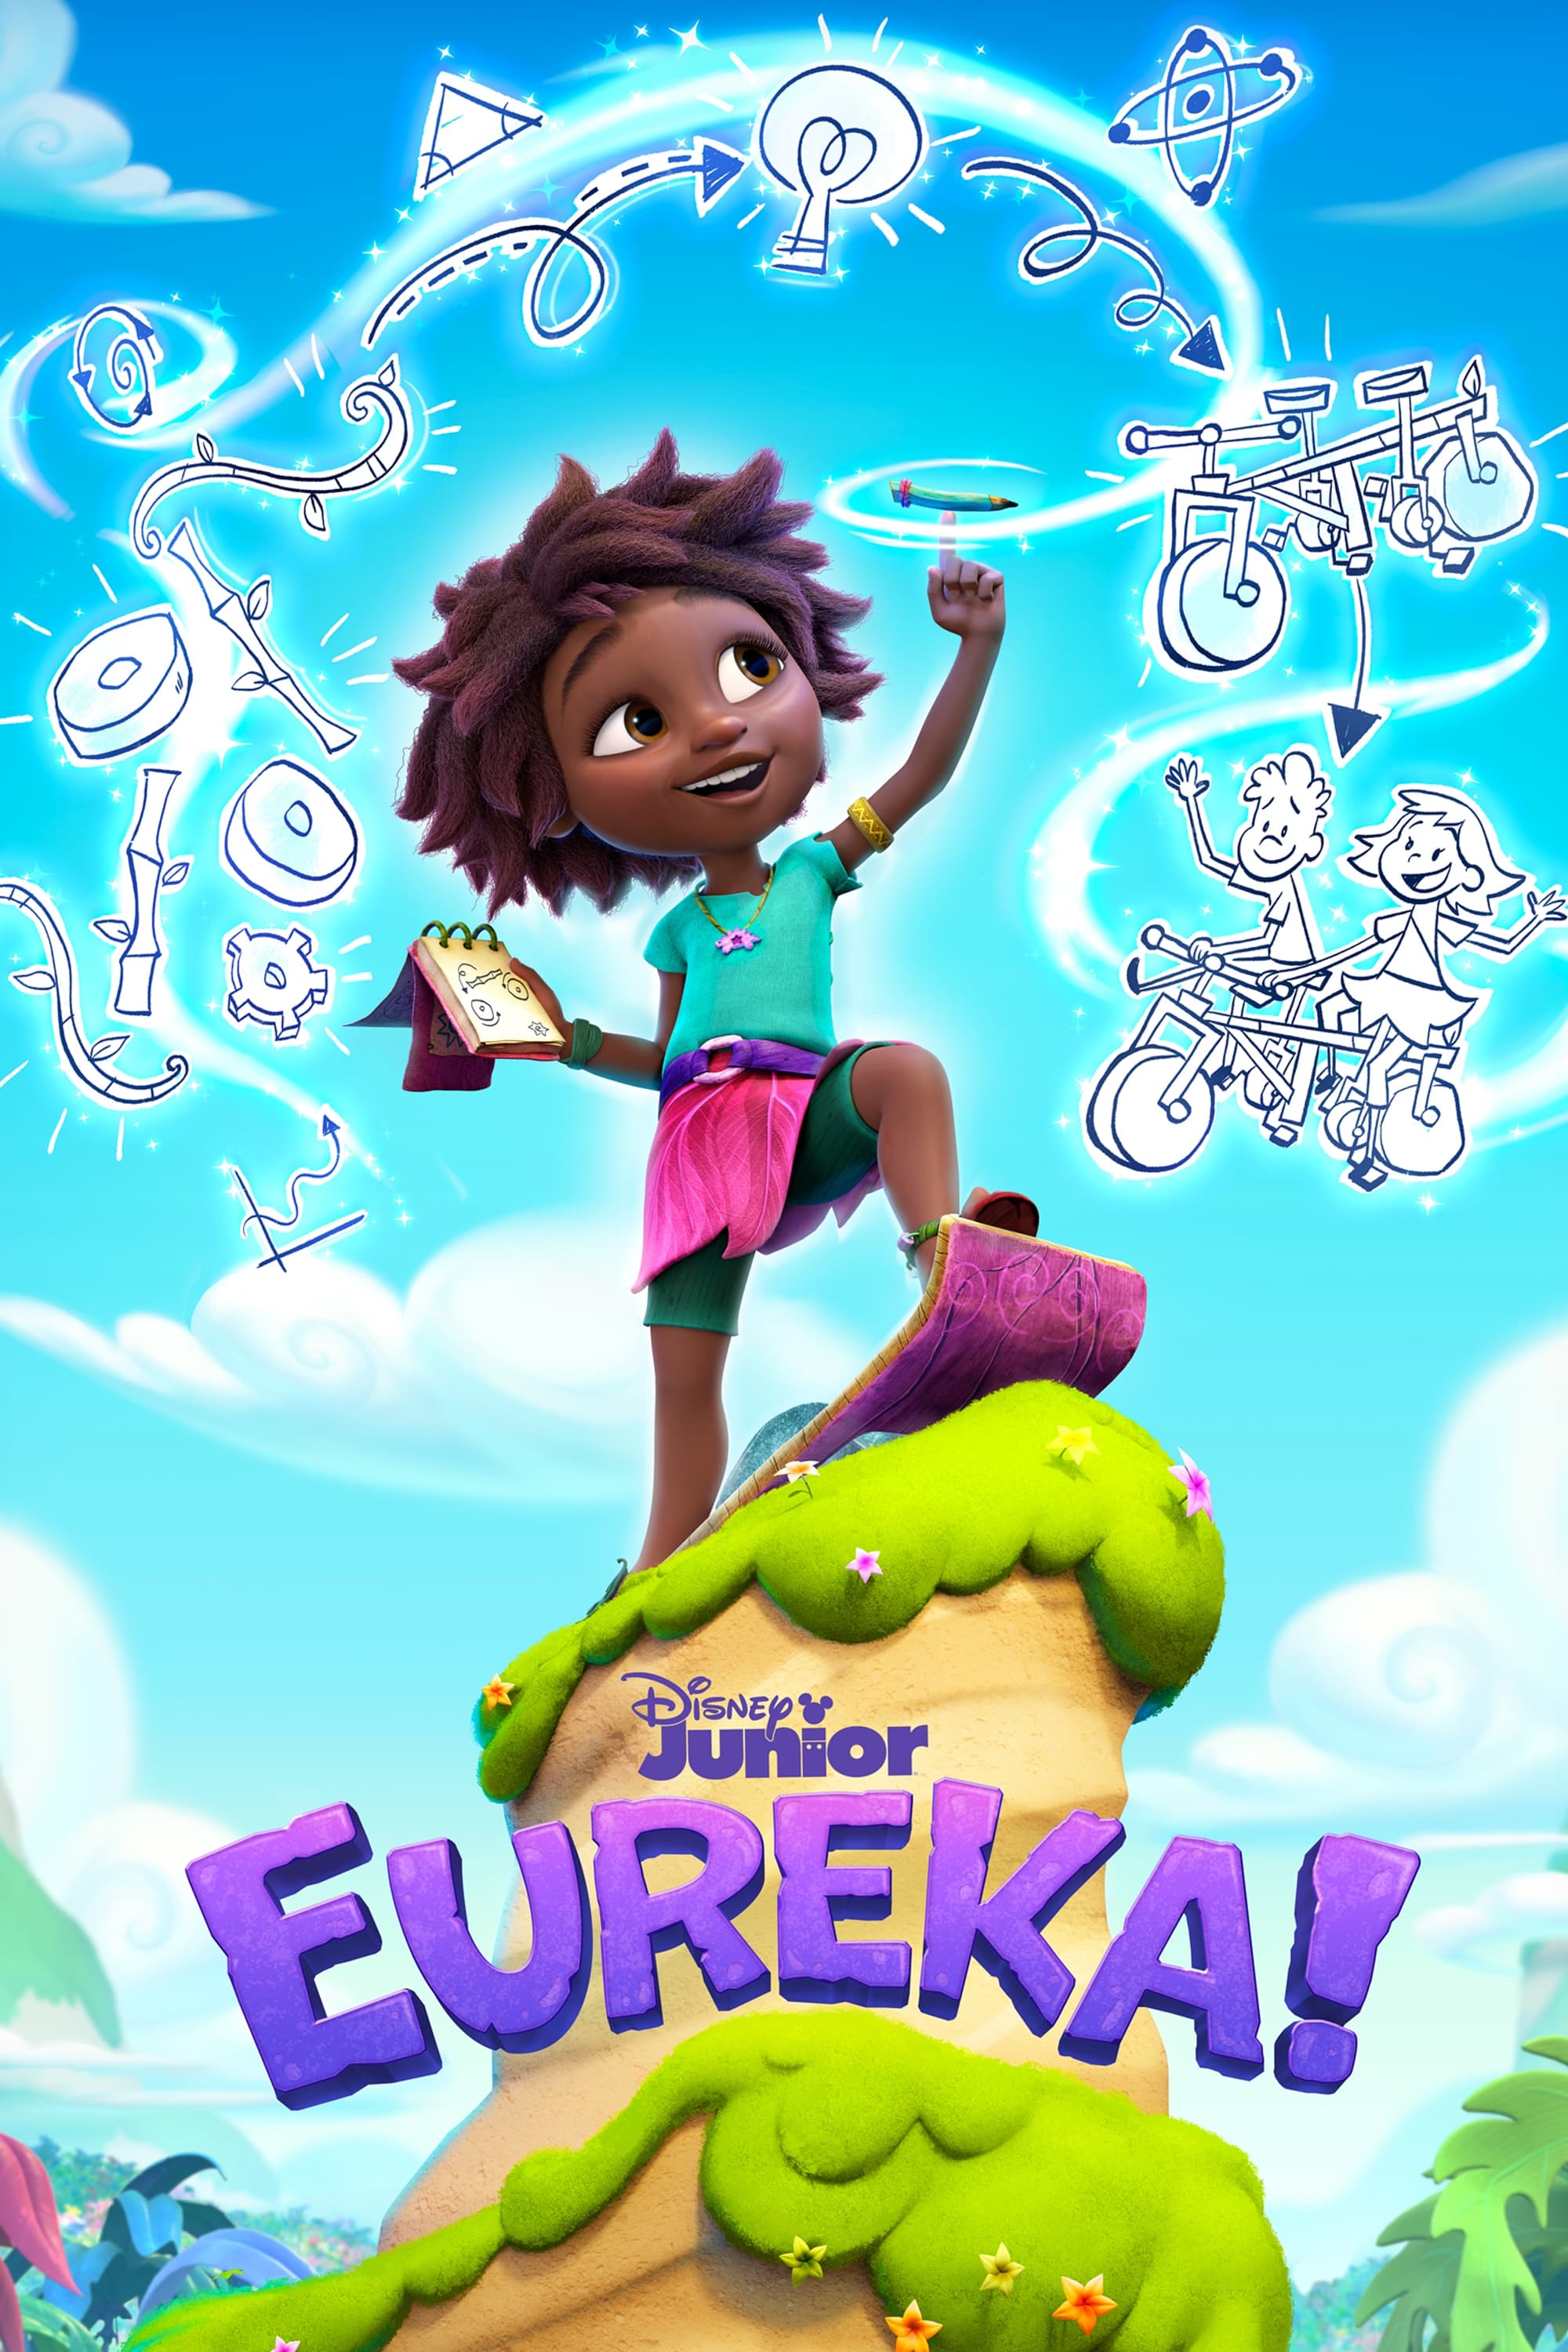 TV ratings for Eureka! in Irlanda. Disney Junior TV series